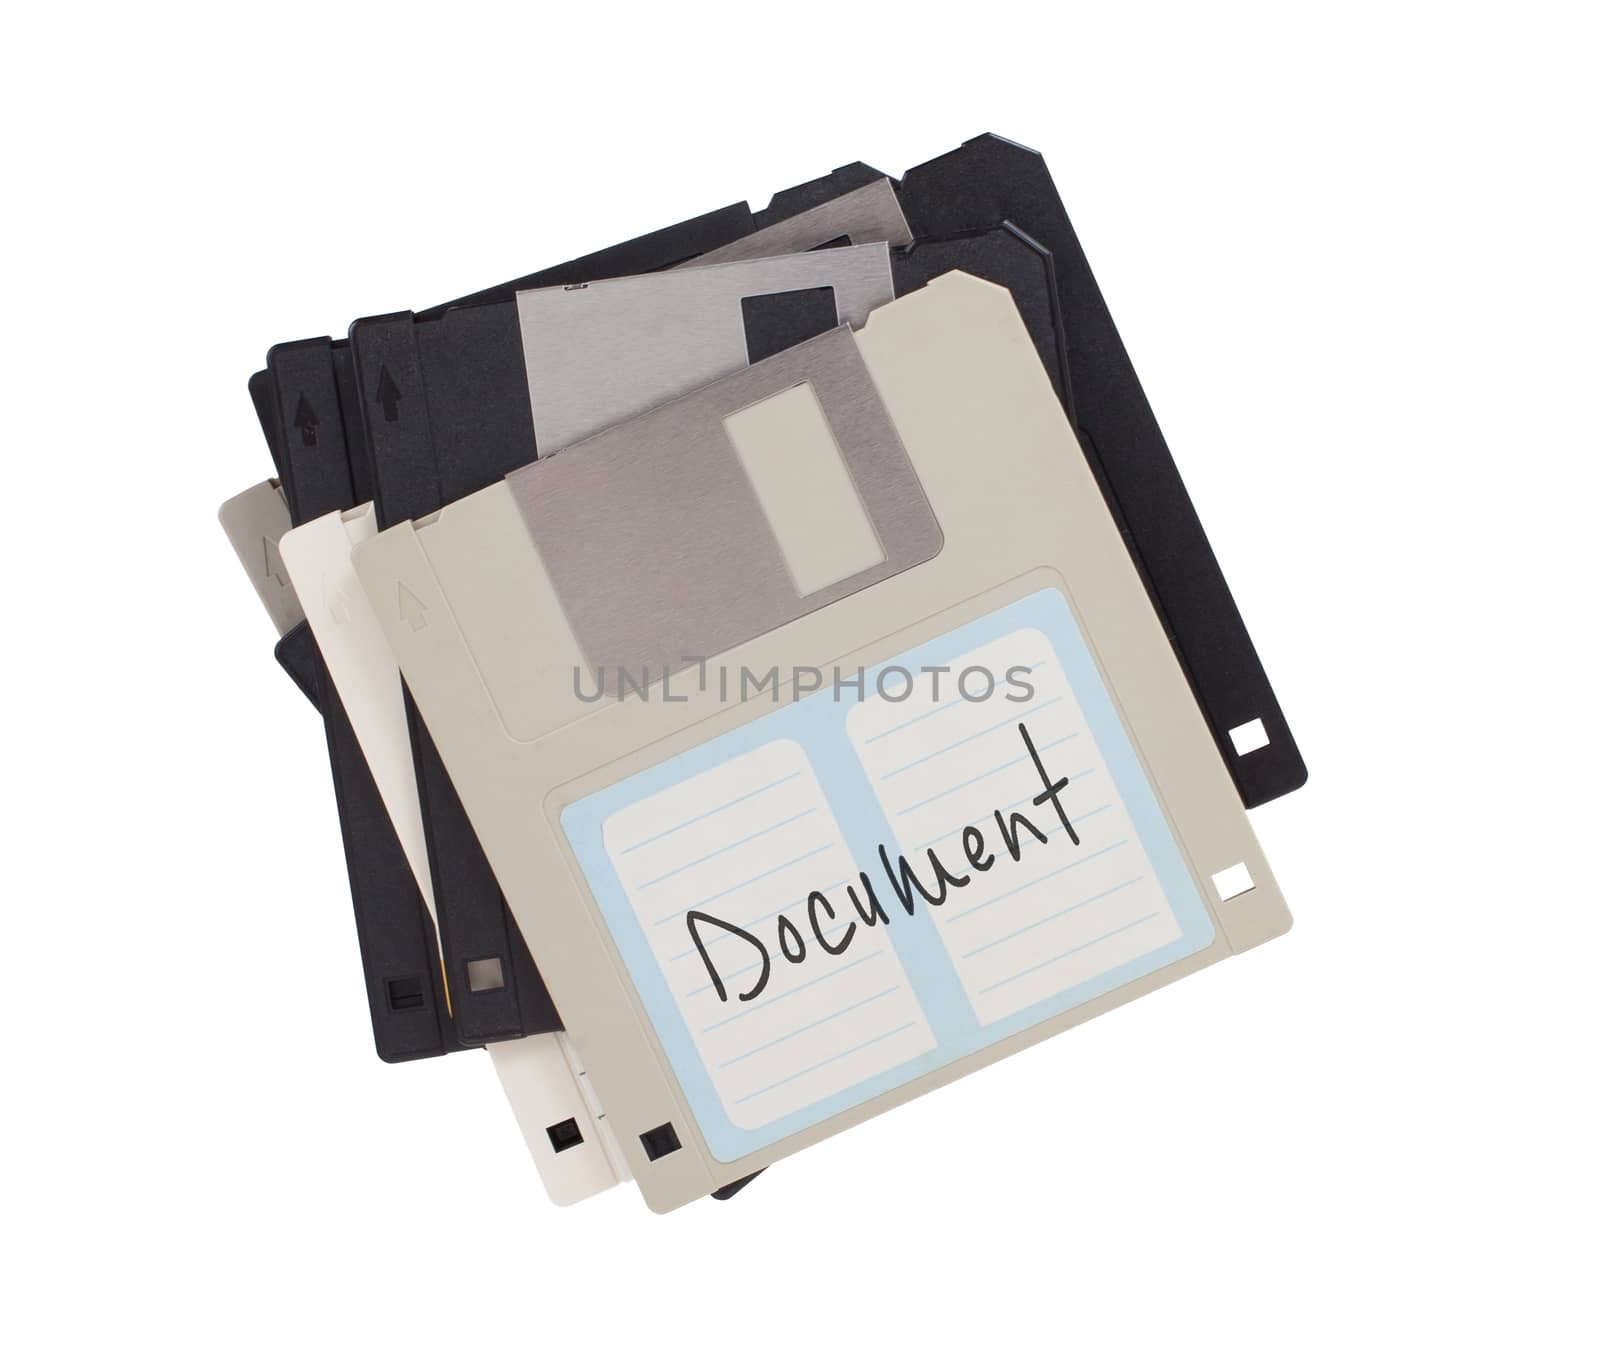 Floppy disk, data storage support  by michaklootwijk